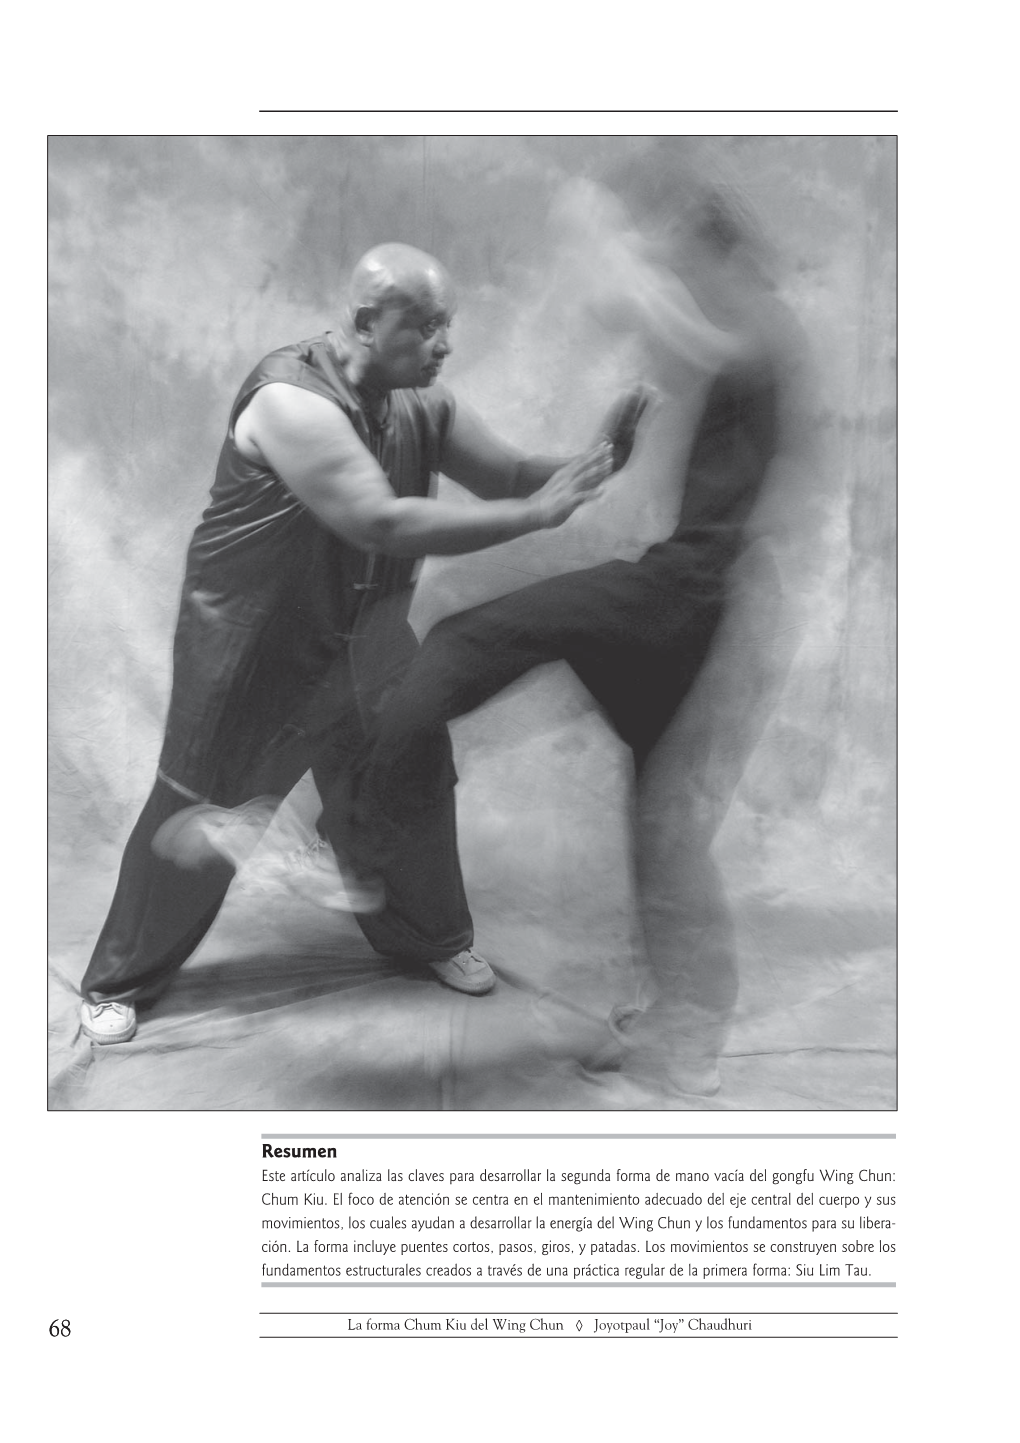 La Forma Chum Kiu Del Wing Chun Un Estudio Sobre La Estabilidad Y La Movilidad